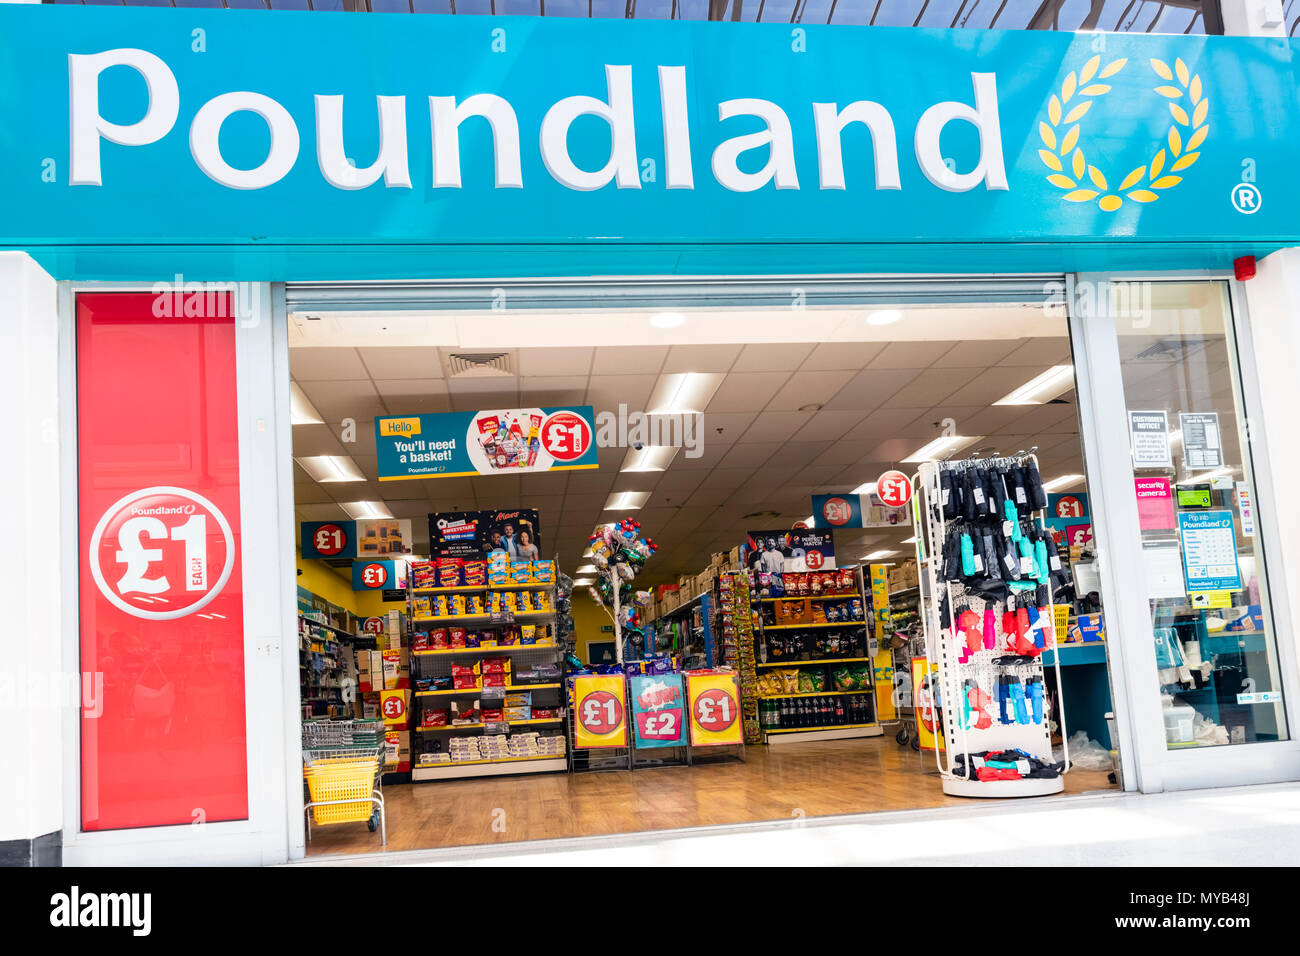 Poundland store, UK. Stock Photo